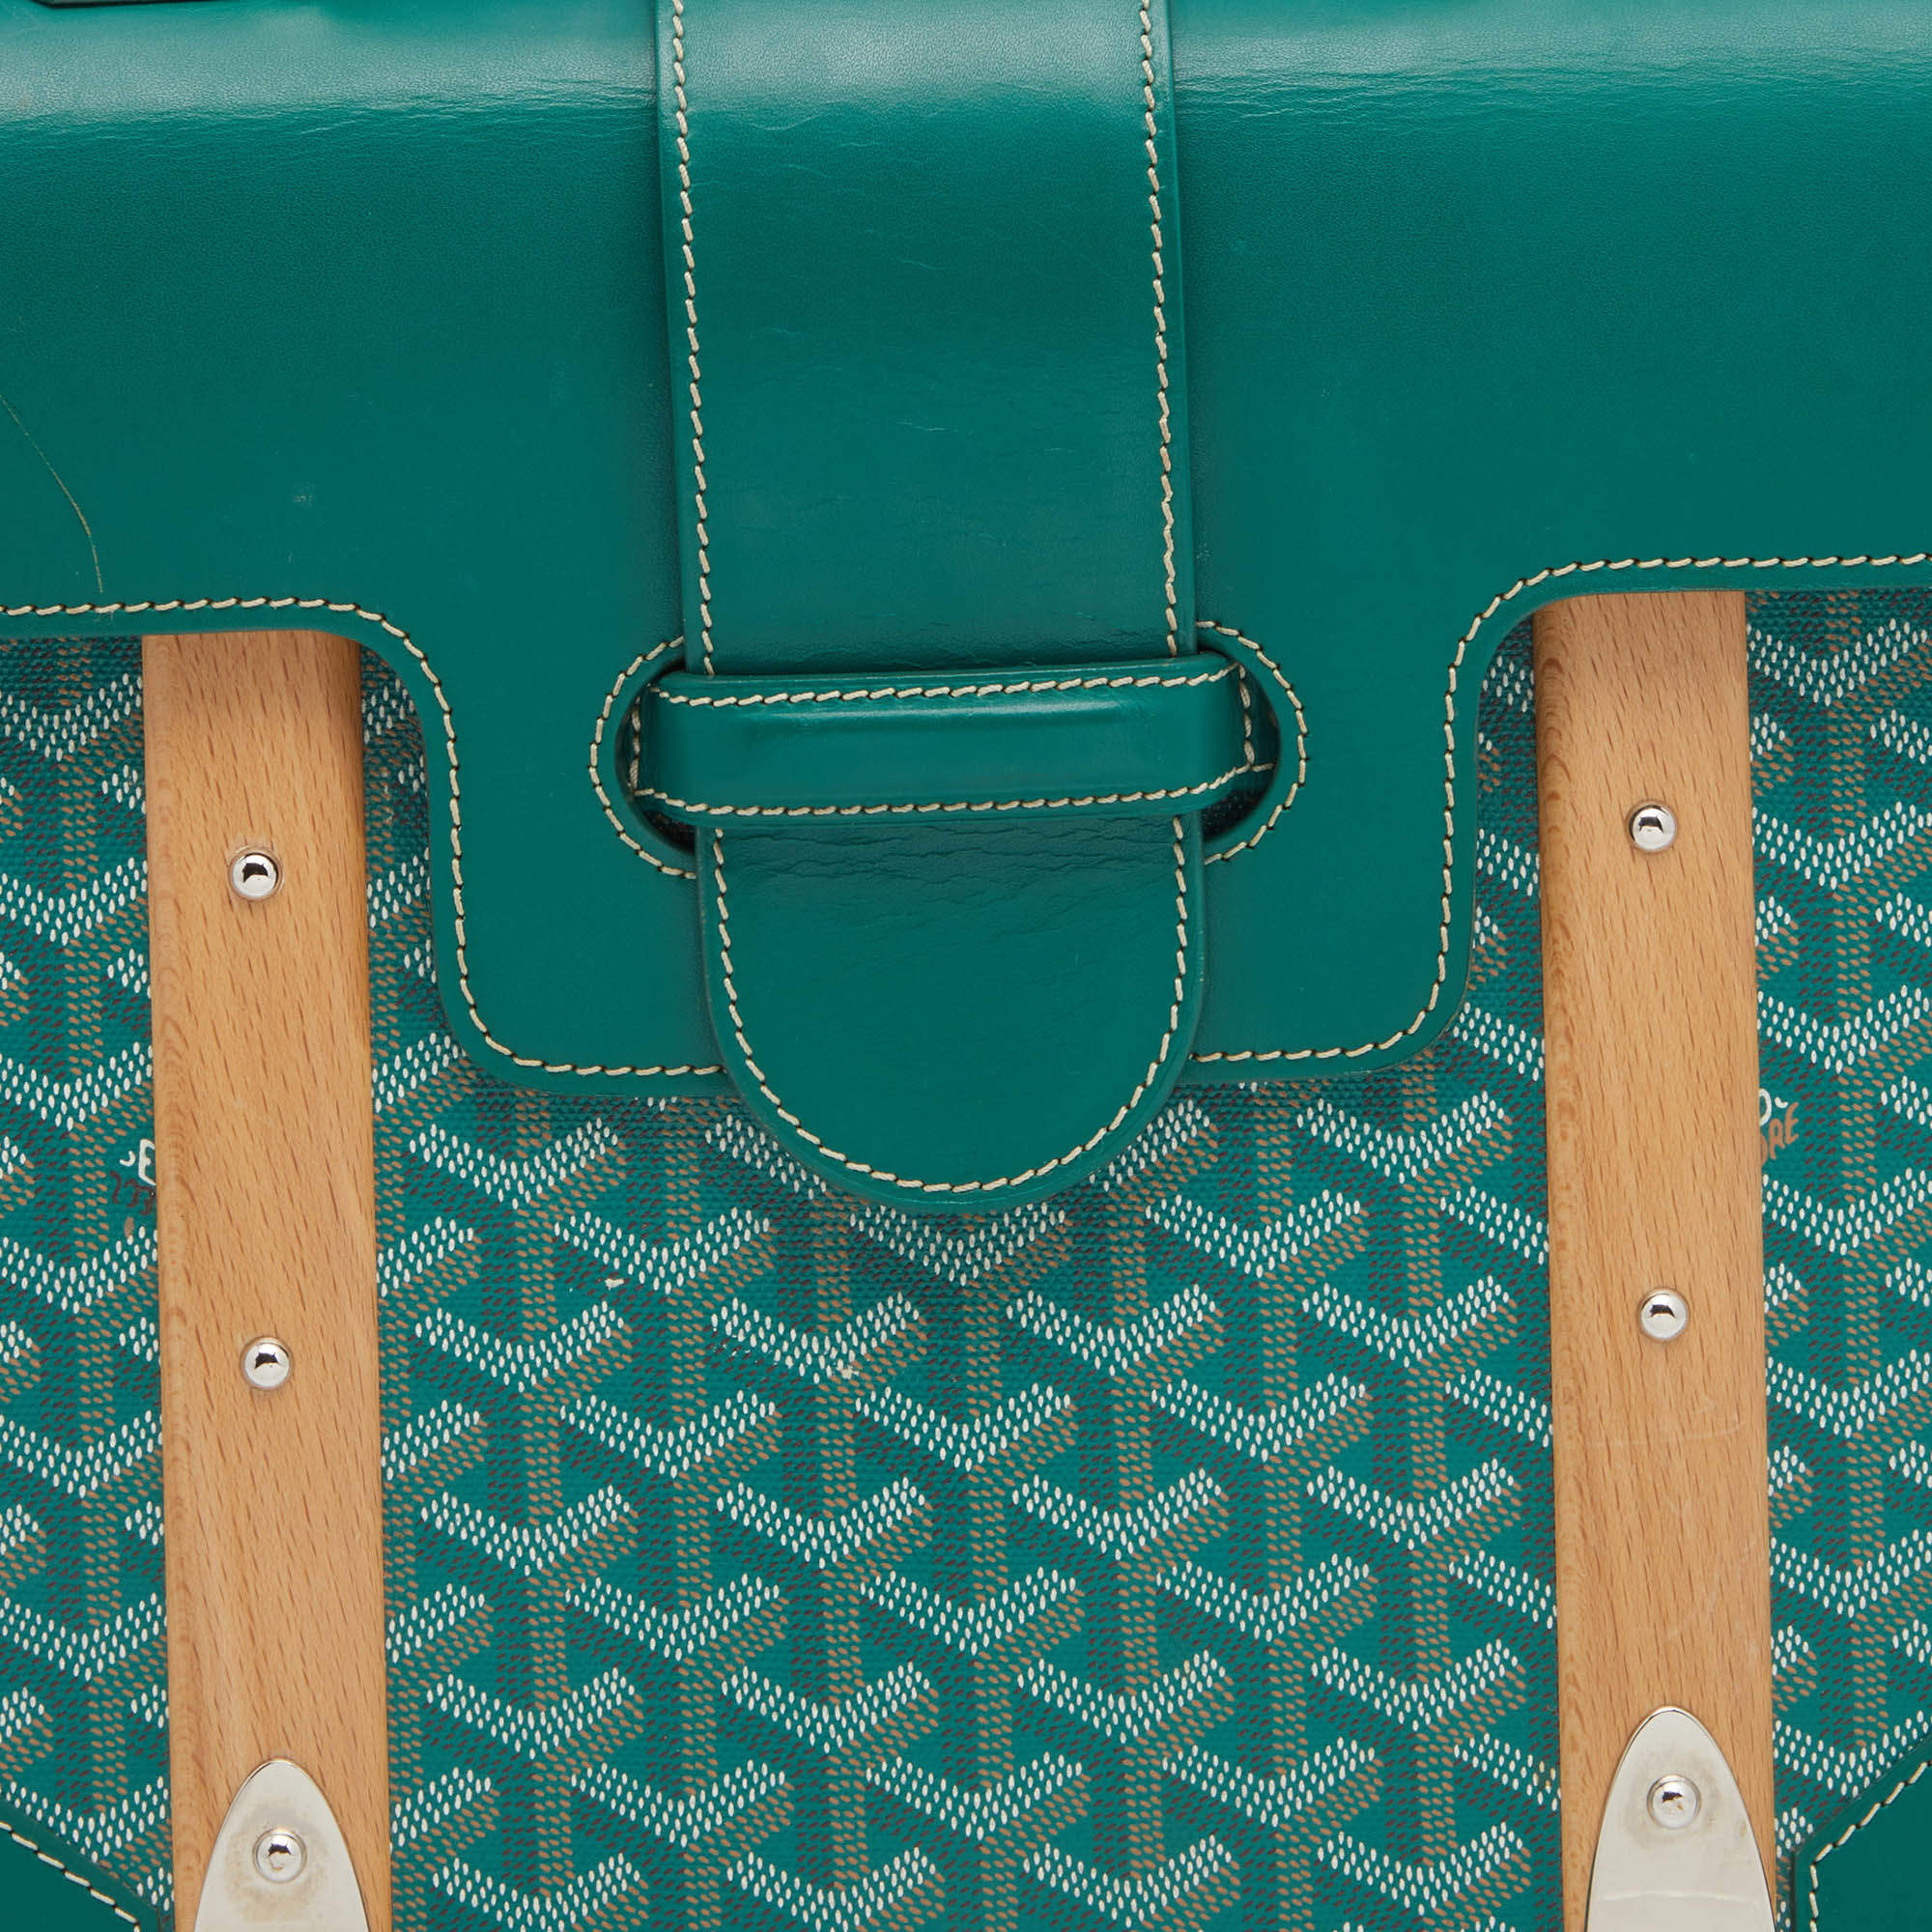 Saïgon leather handbag Goyard Green in Leather - 34192778